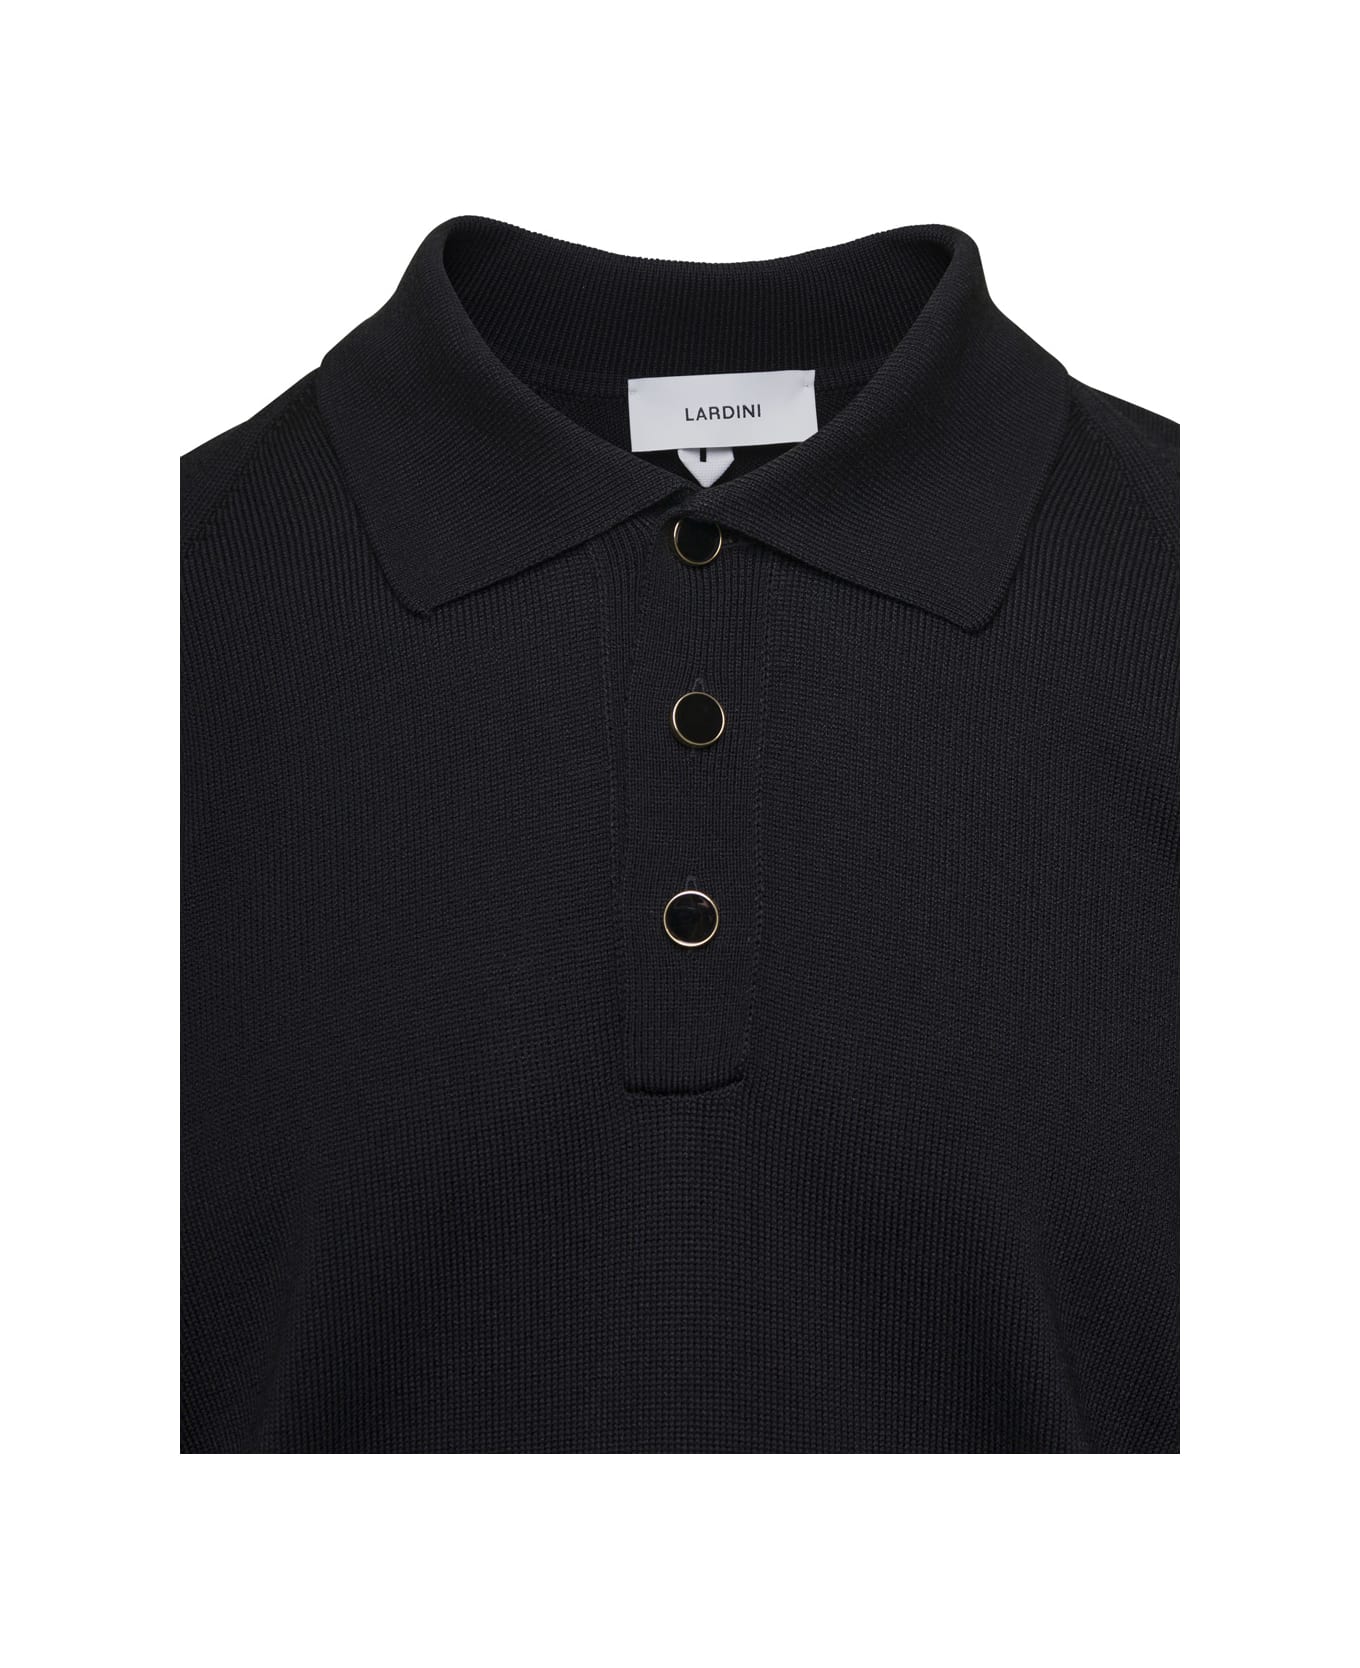 Lardini Black Polo T-shirt In Cotton Blend Man - Black